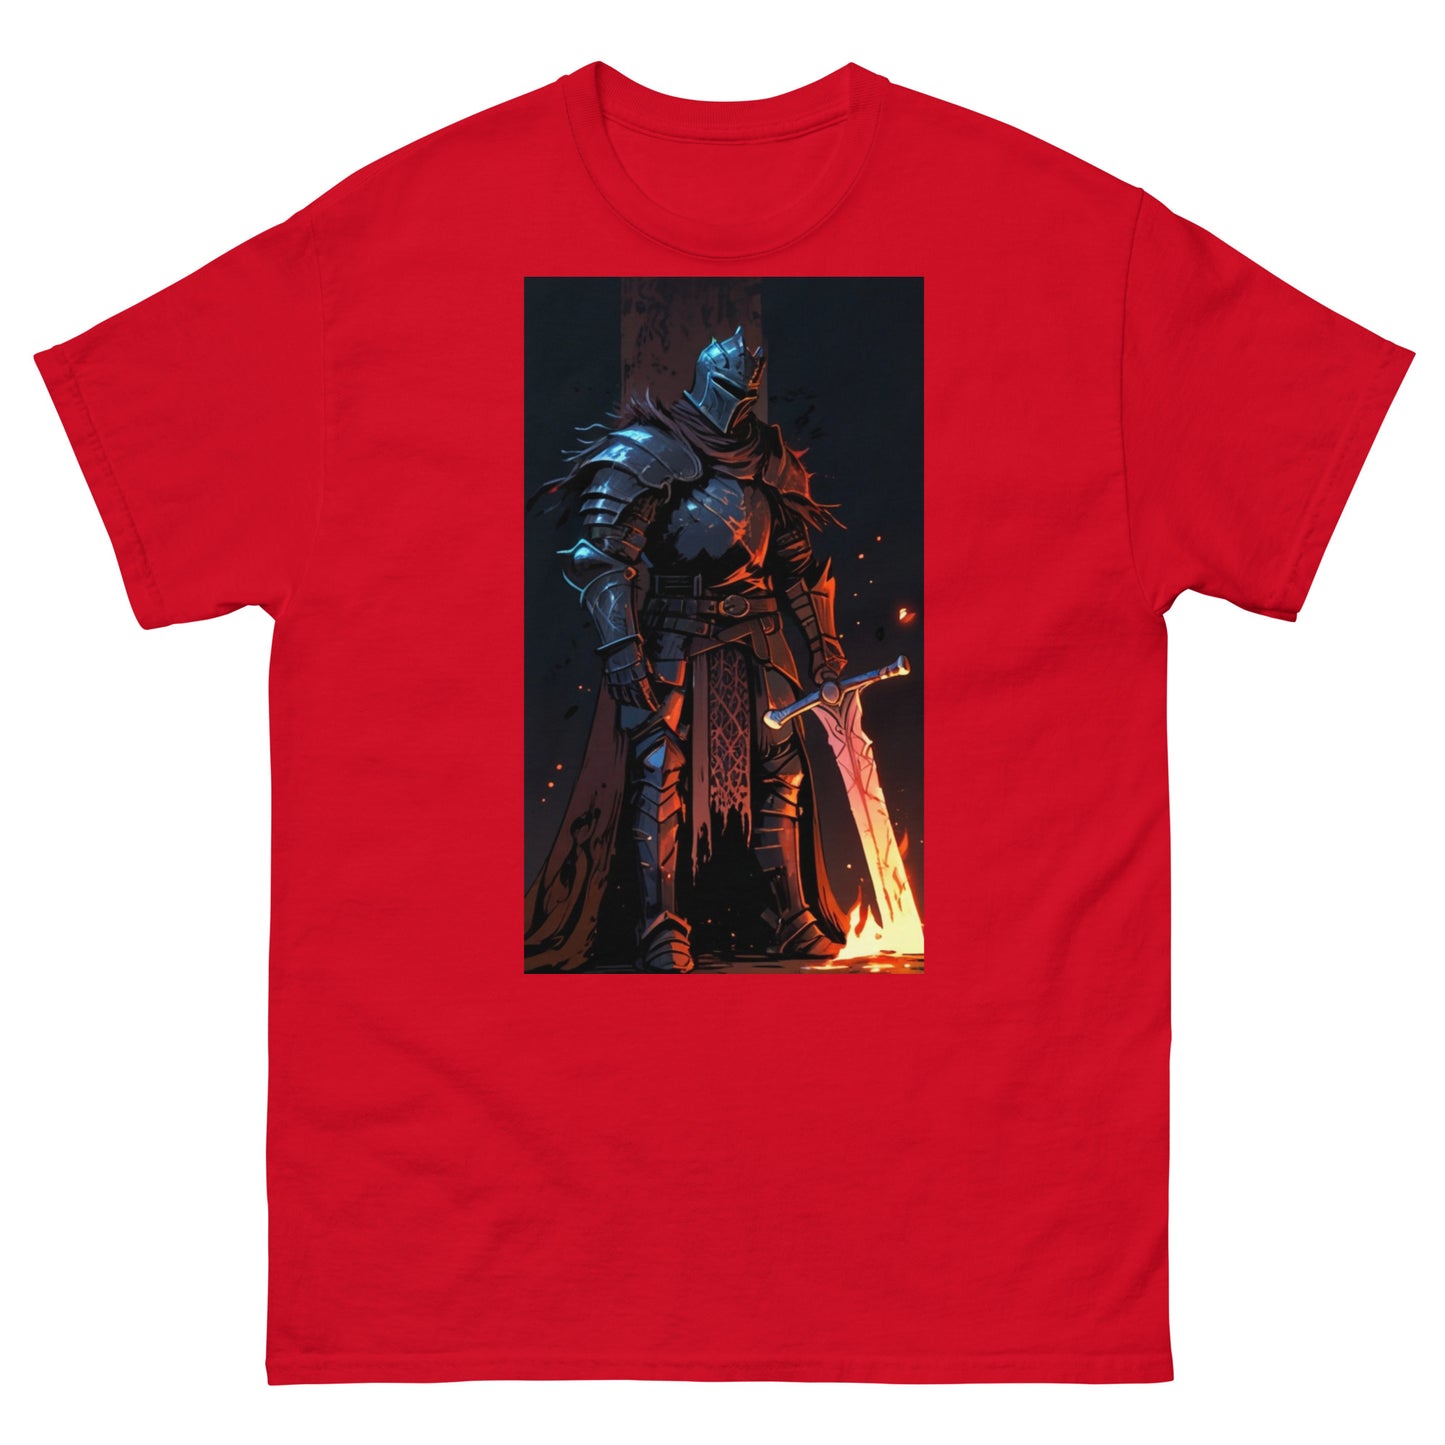 Klassisches Herren-T-Shirt Souls Like Dark Knight mit Schwert